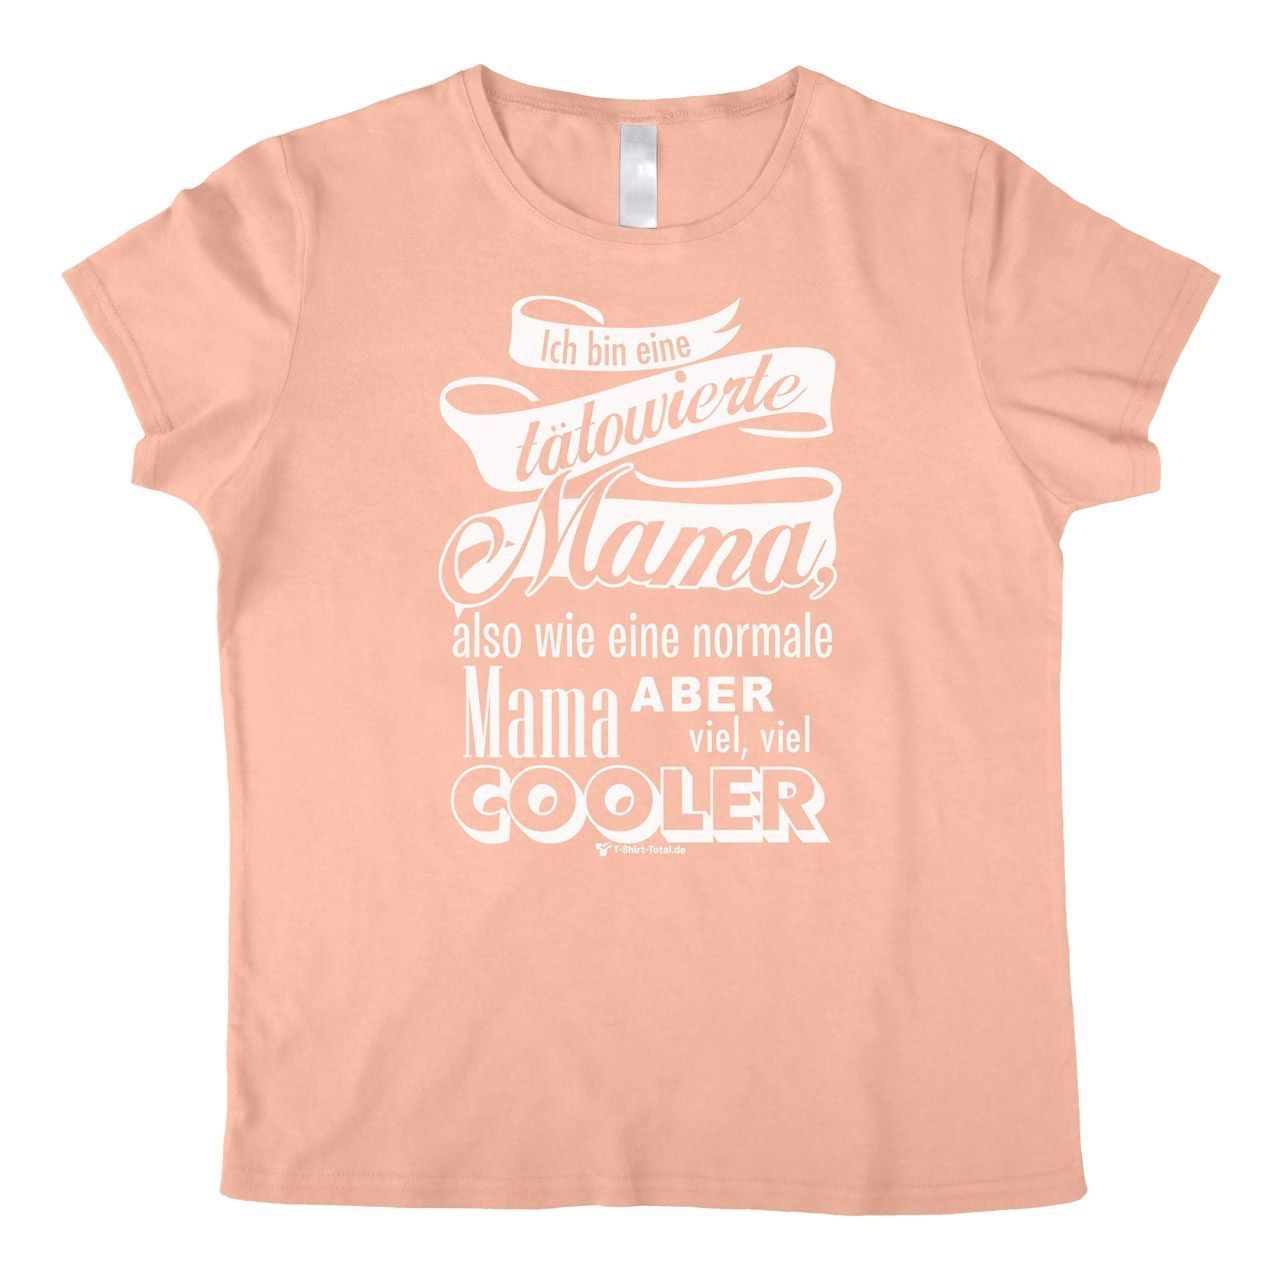 Tätowierte Mama Woman T-Shirt rosa Small